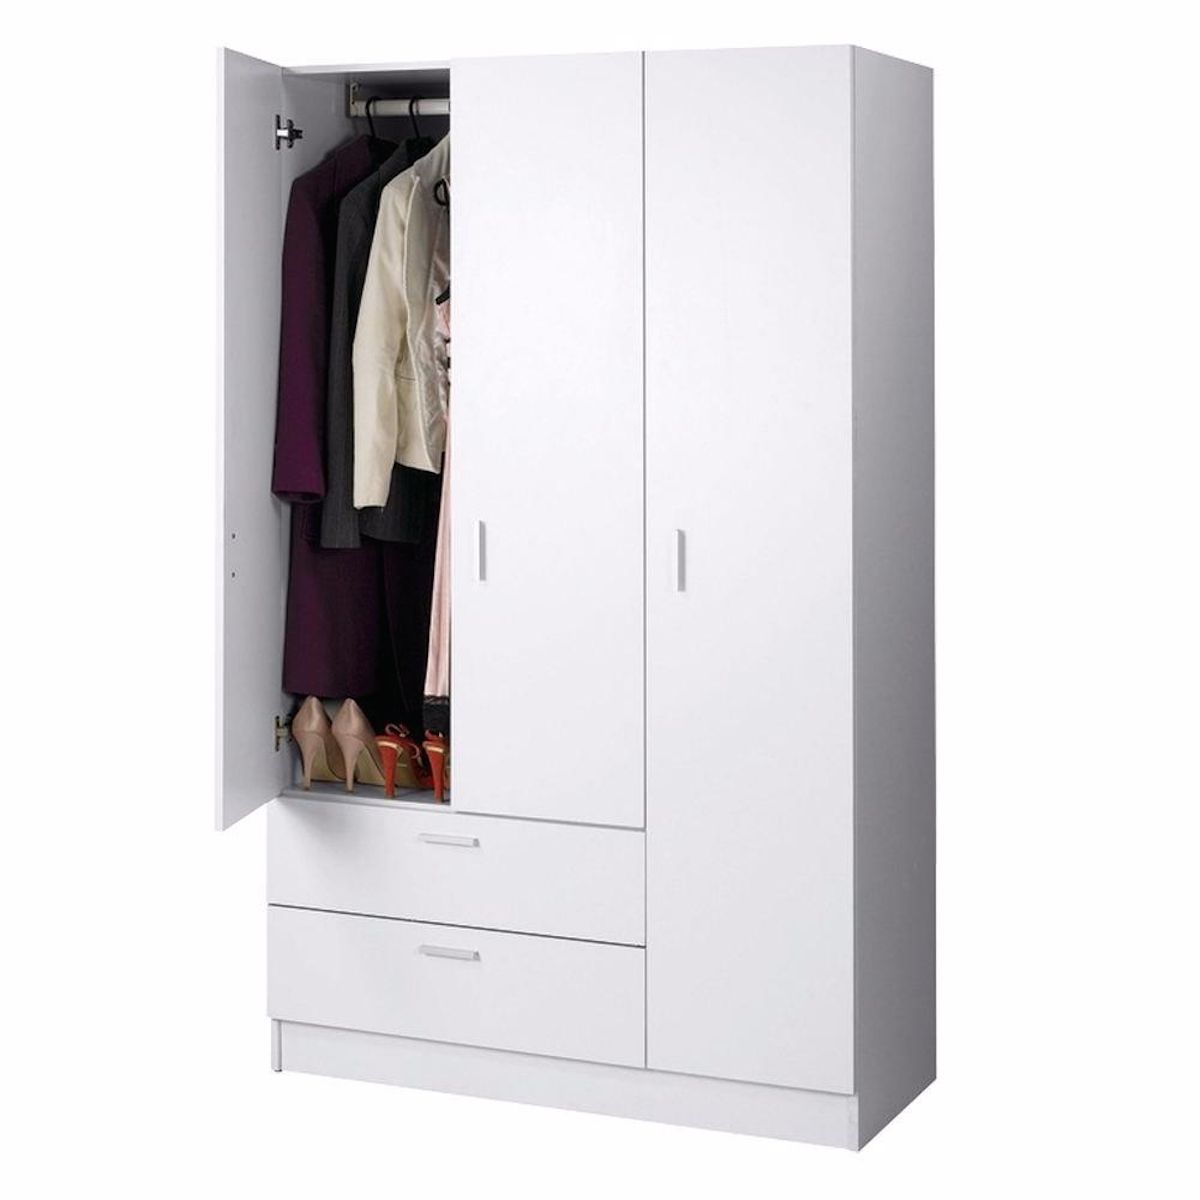 Maxx 3 Door Wardrobe White | Wardrobes | Lifestyle Furniture Inside White 3 Door Wardrobes (Photo 15 of 15)